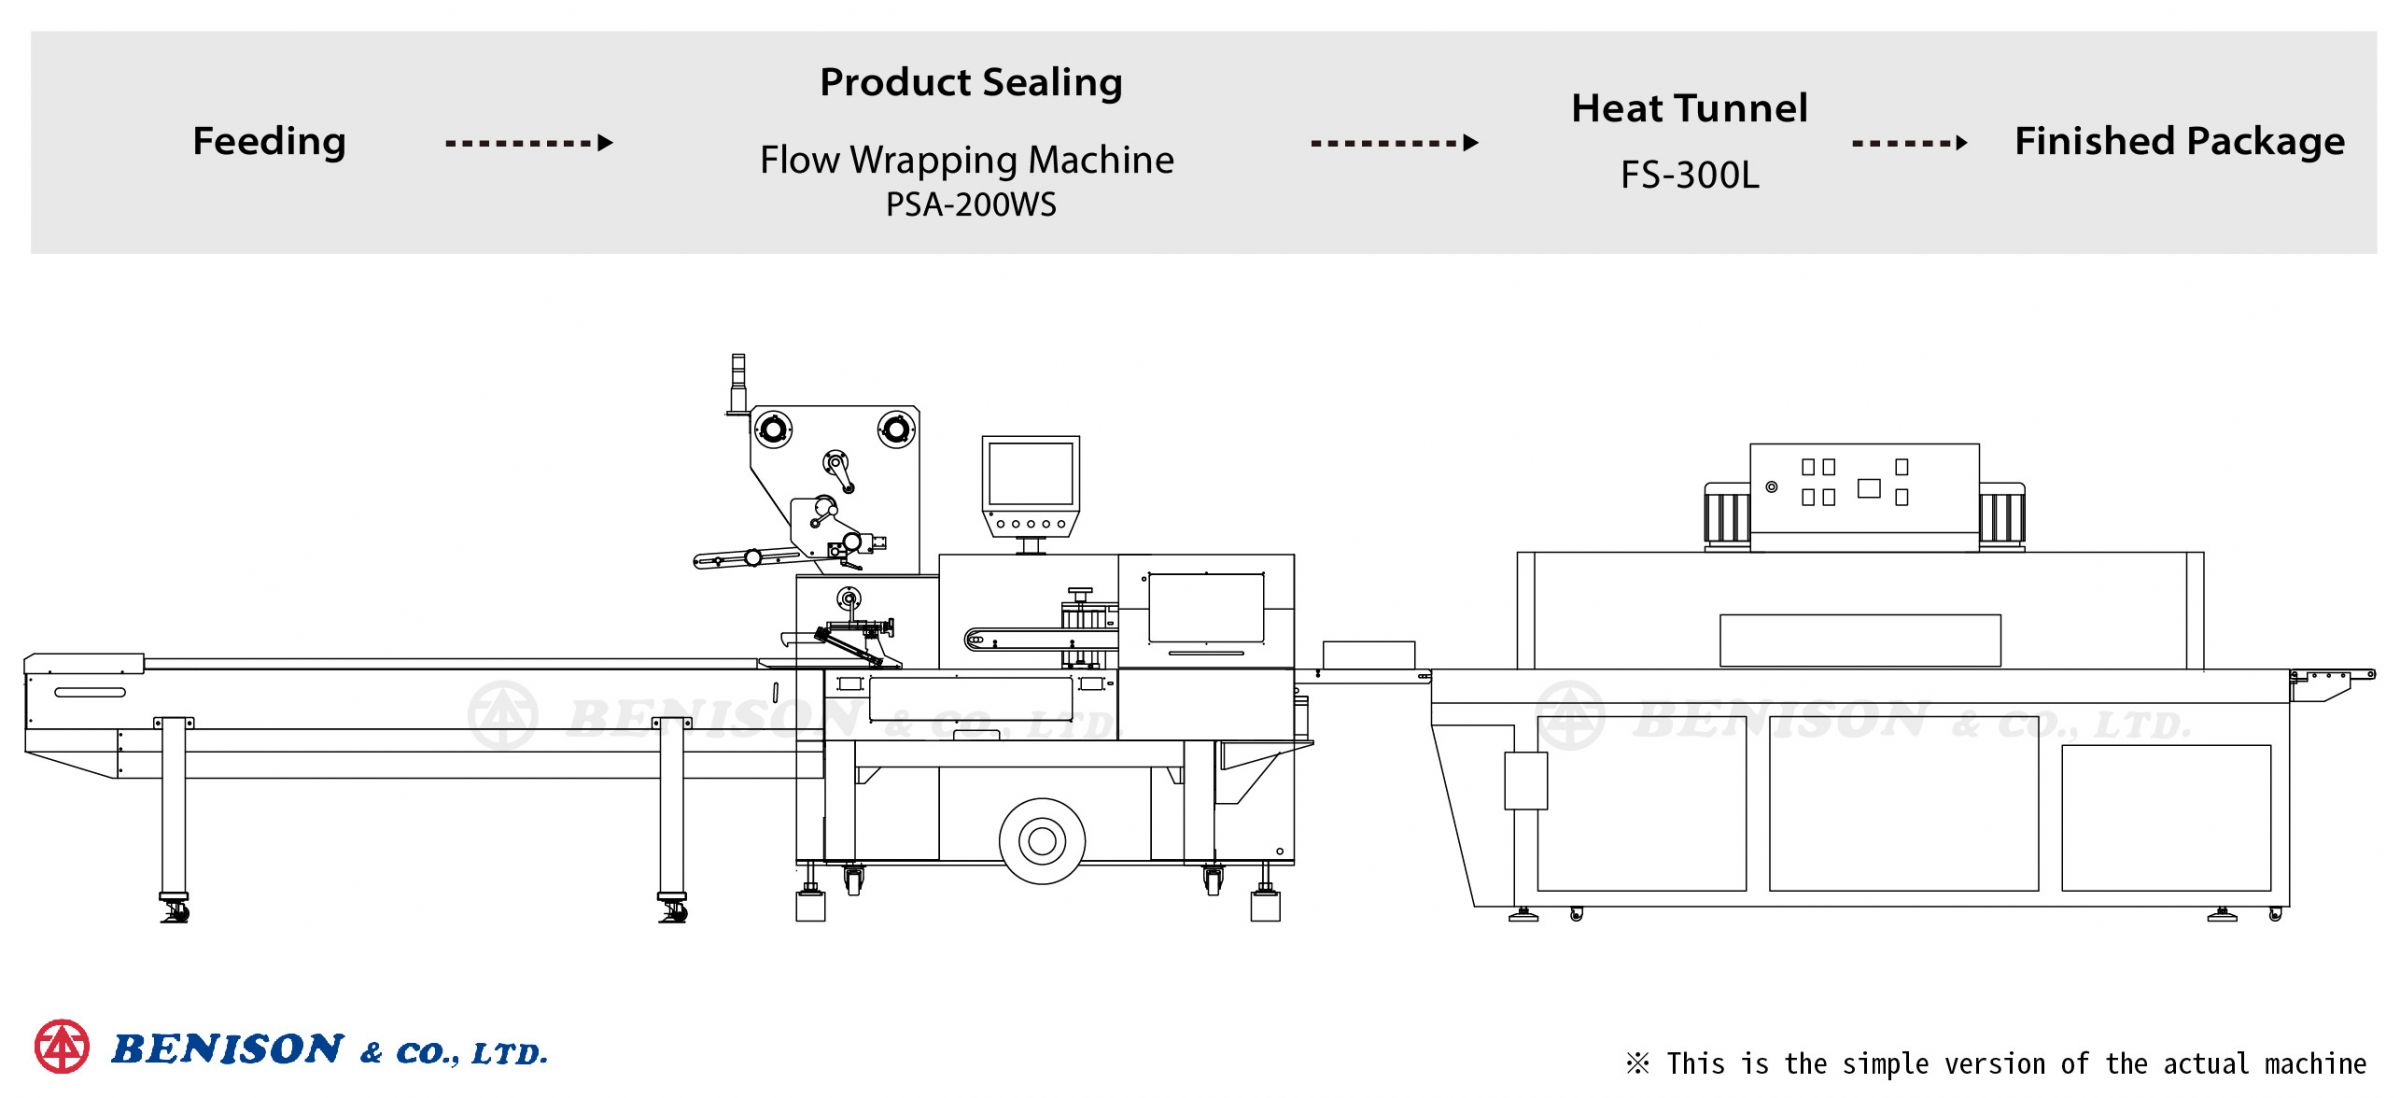 Máy Đóng Gói Dạng Luồn PSA-200WS + Heat Tunnel FS-300L cho Giải Pháp Sản Phẩm Bao Bì Ống Cắm